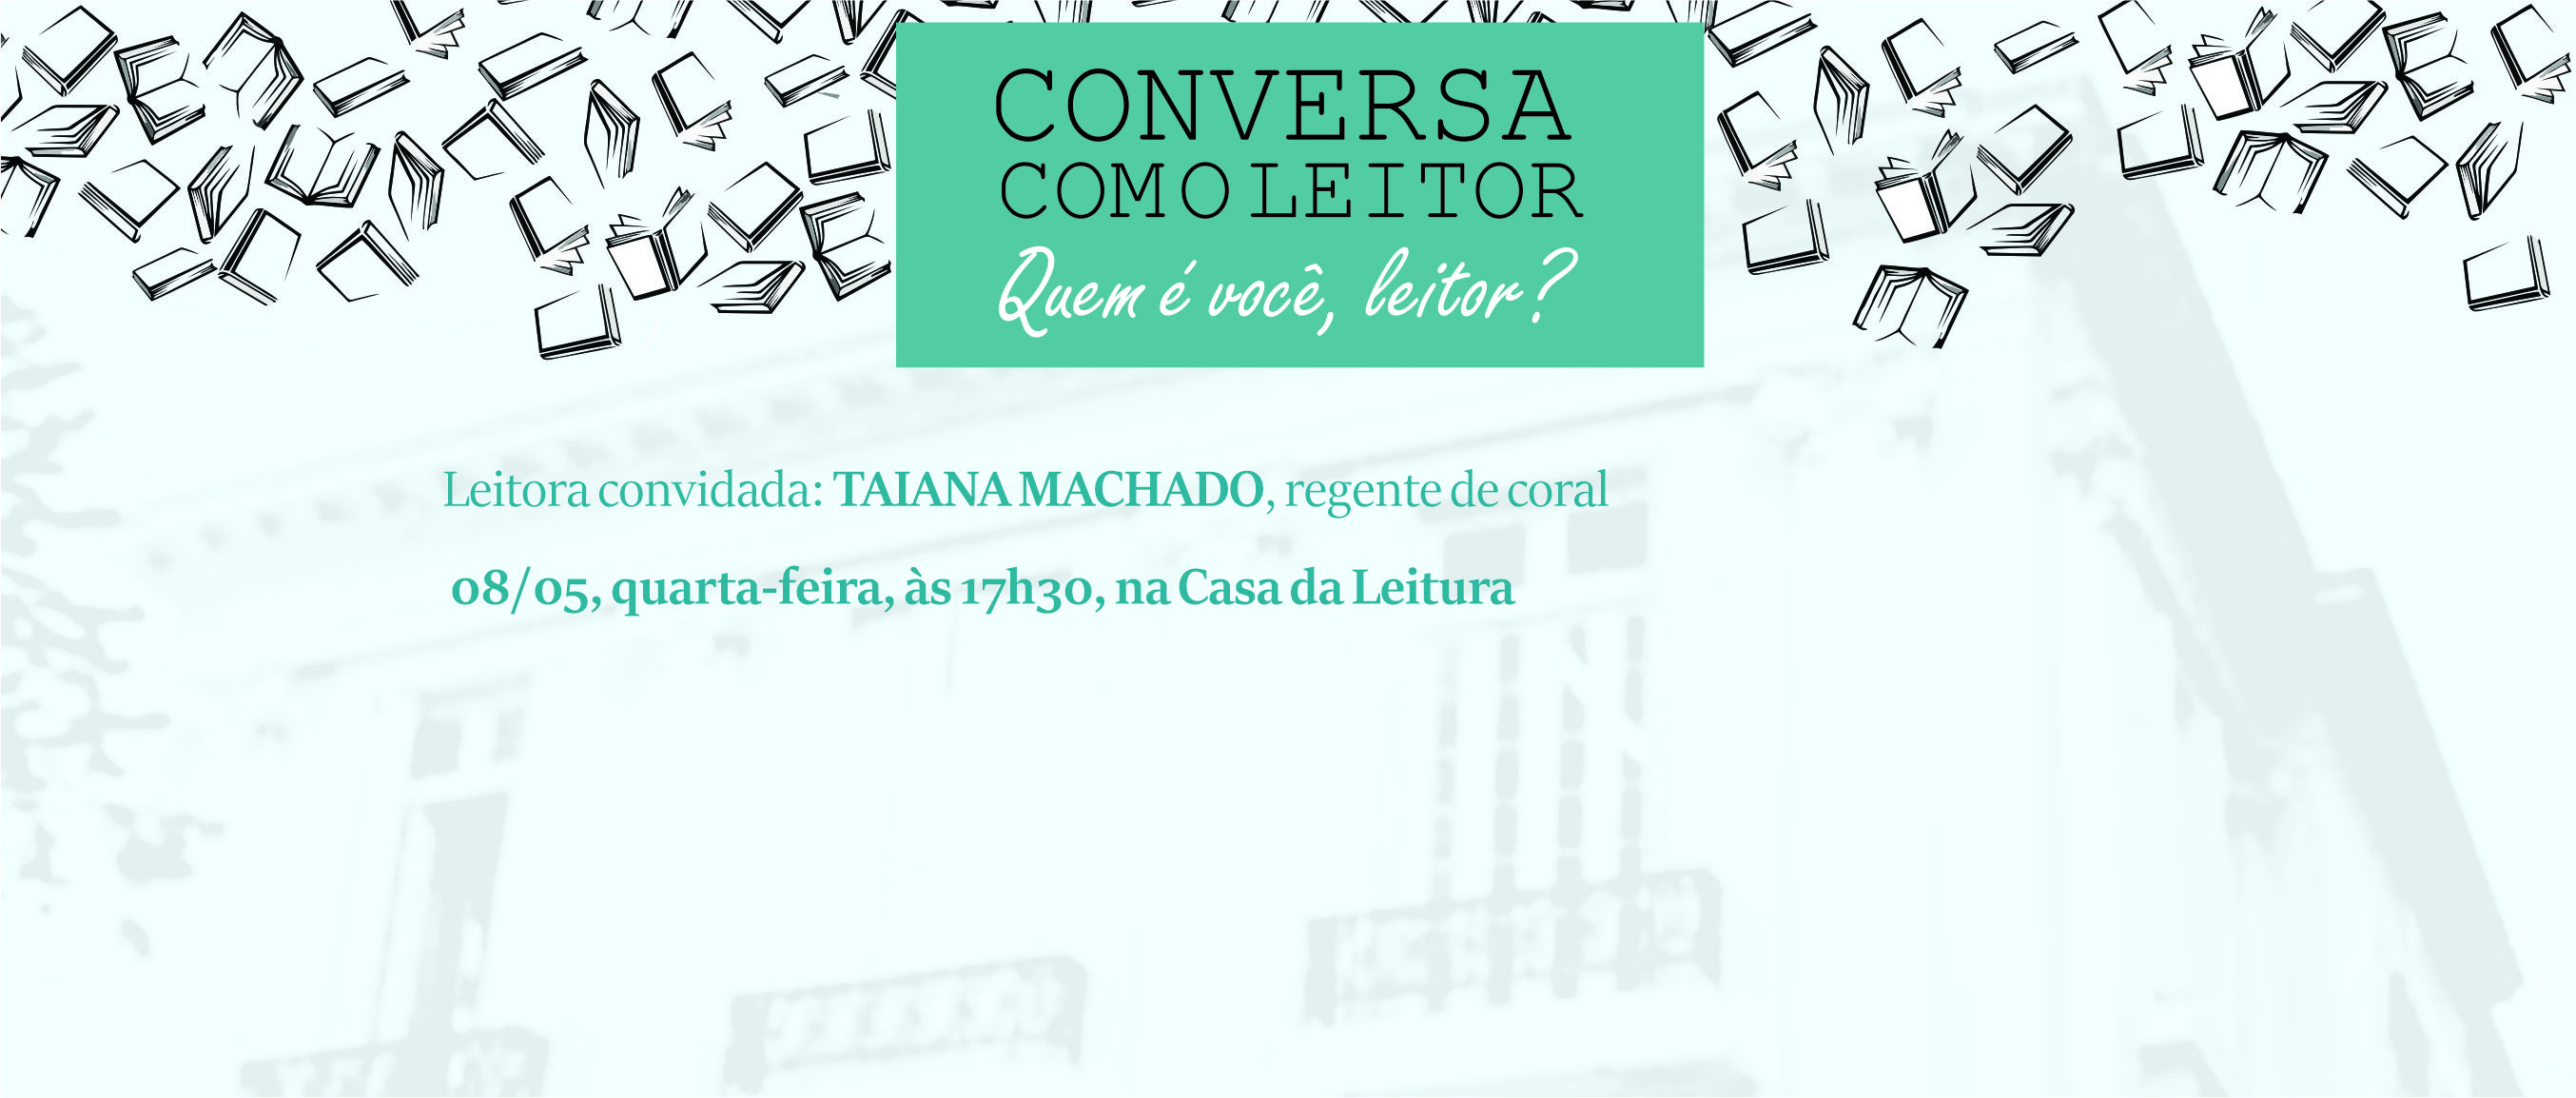 Conversa com o Leitor - Taiana Machado